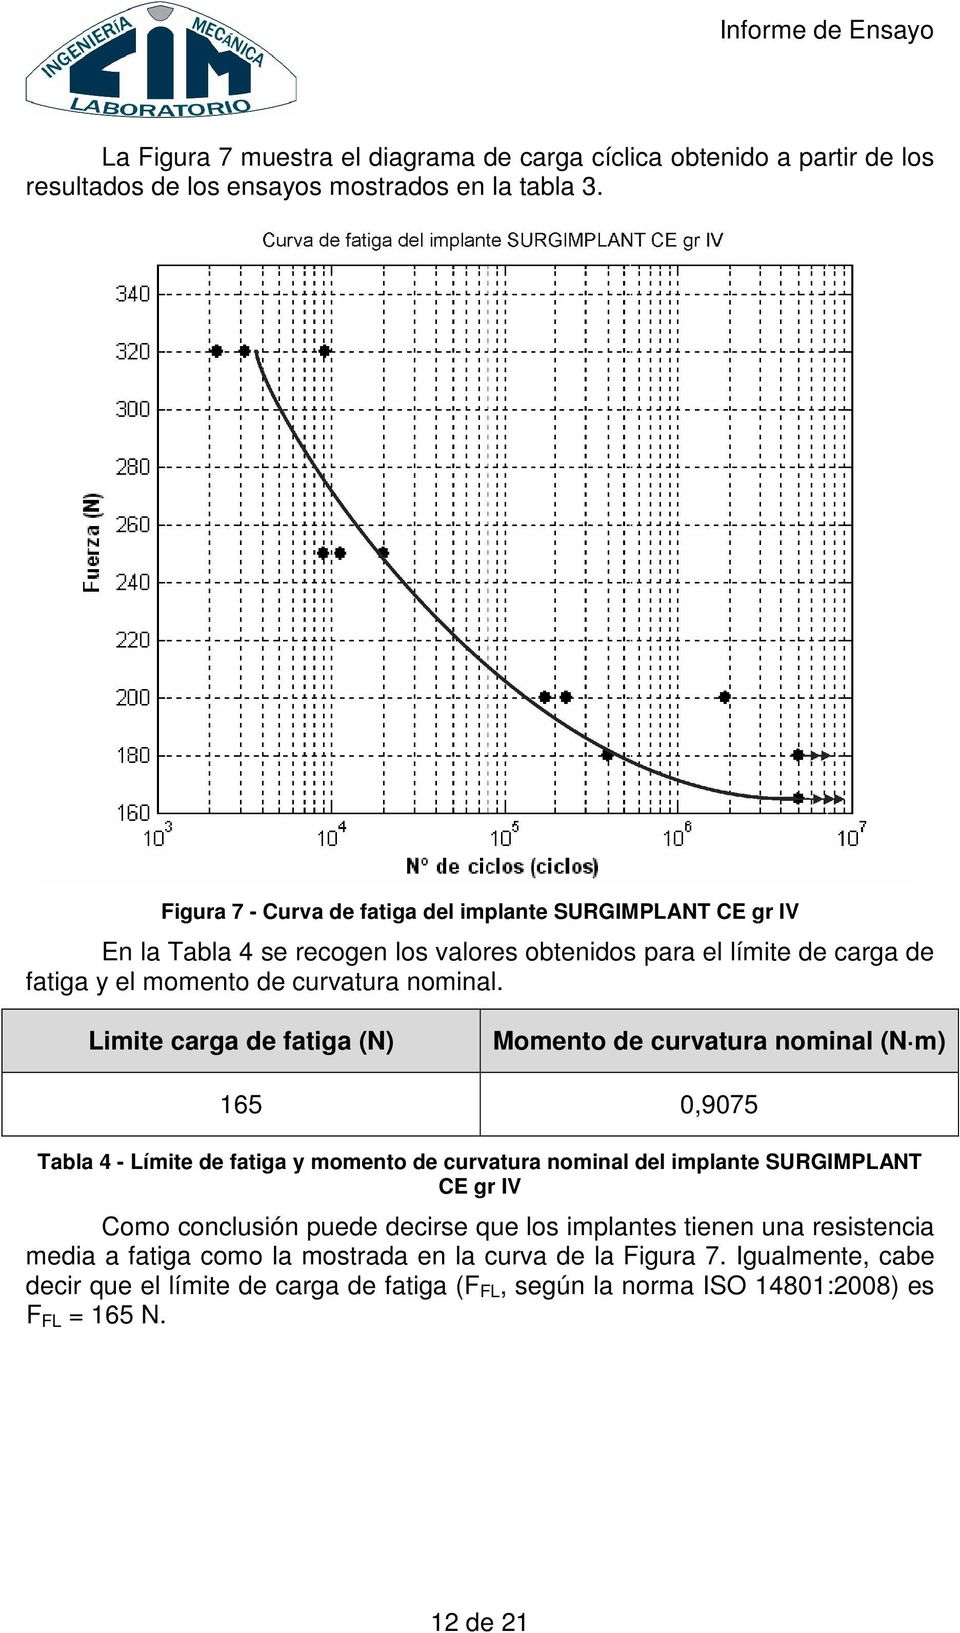 Limite carga de fatiga (N) Momento de curvatura nominal (N m) 165 0,9075 Tabla 4 - Límite de fatiga y momento de curvatura nominal del implante SURGIMPLANT CE gr IV Como